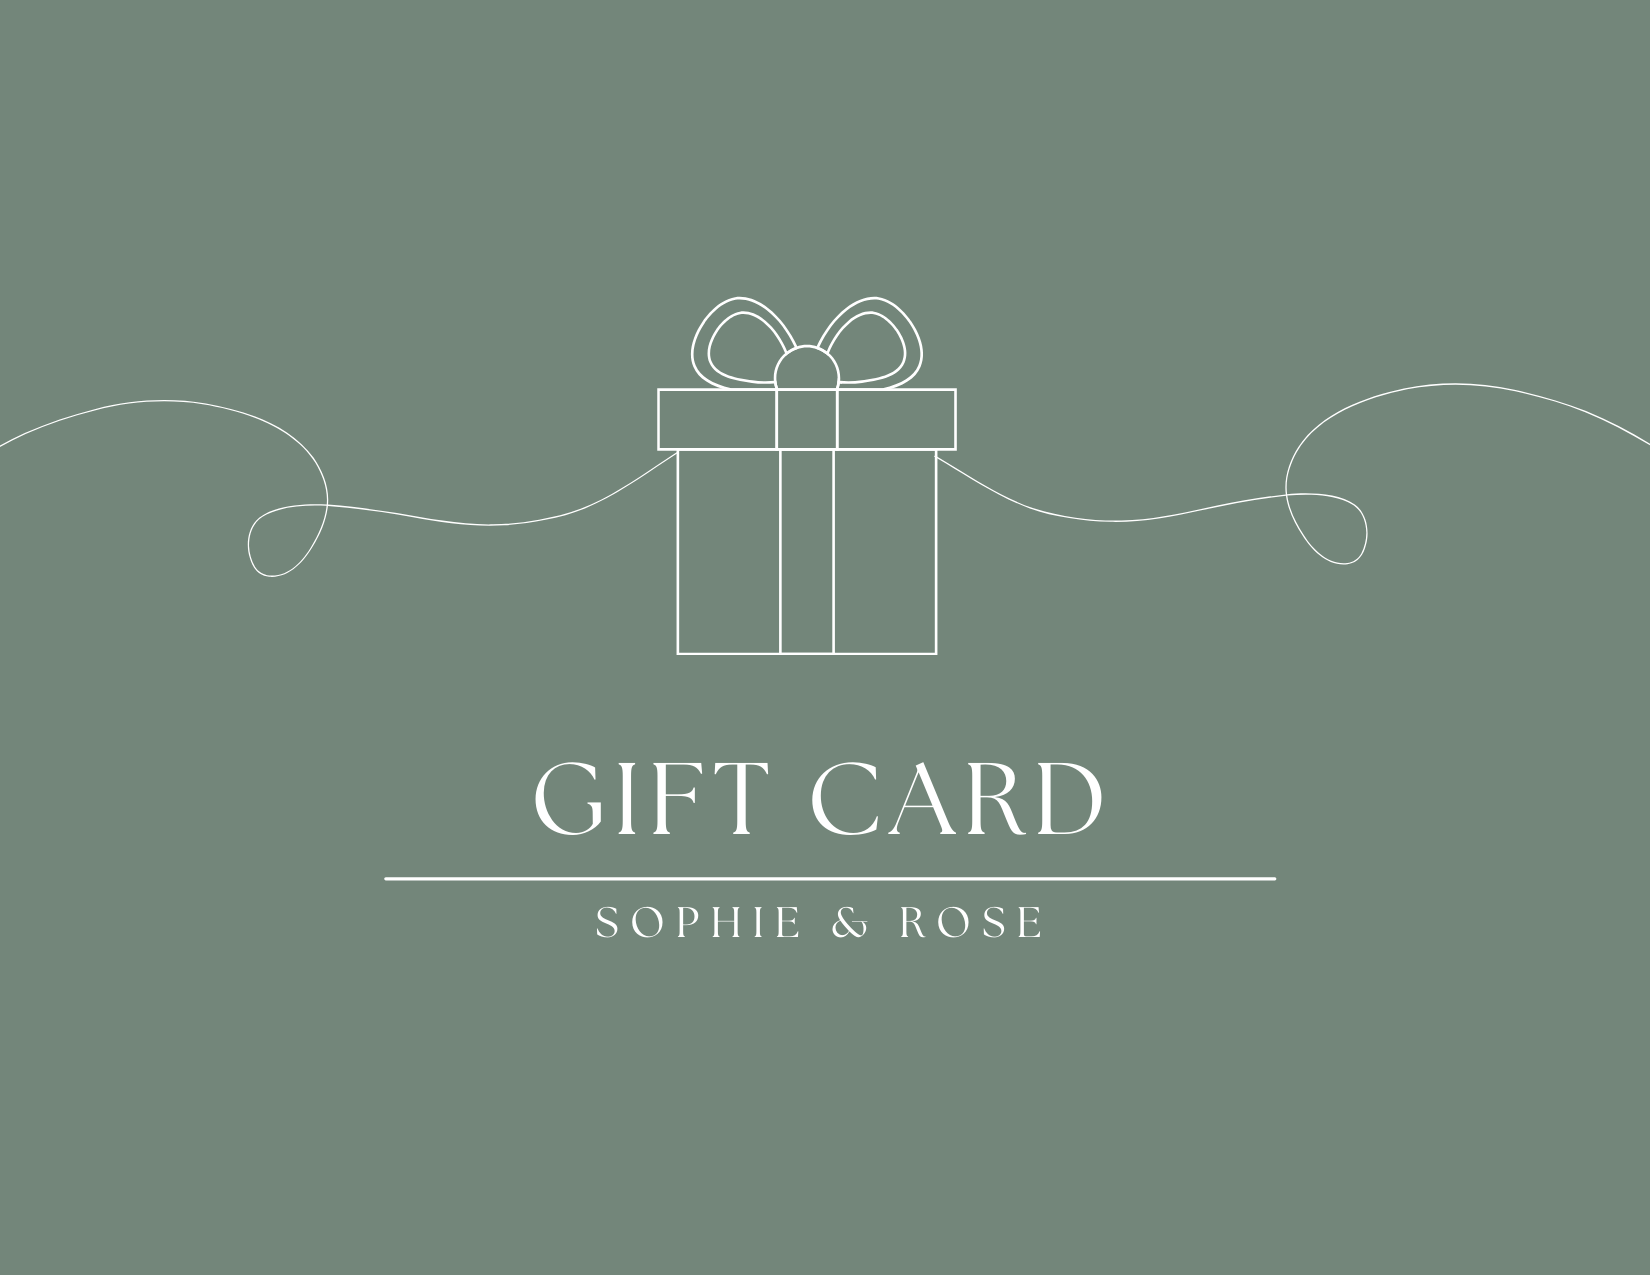 Sophie & Rose: Gift Card